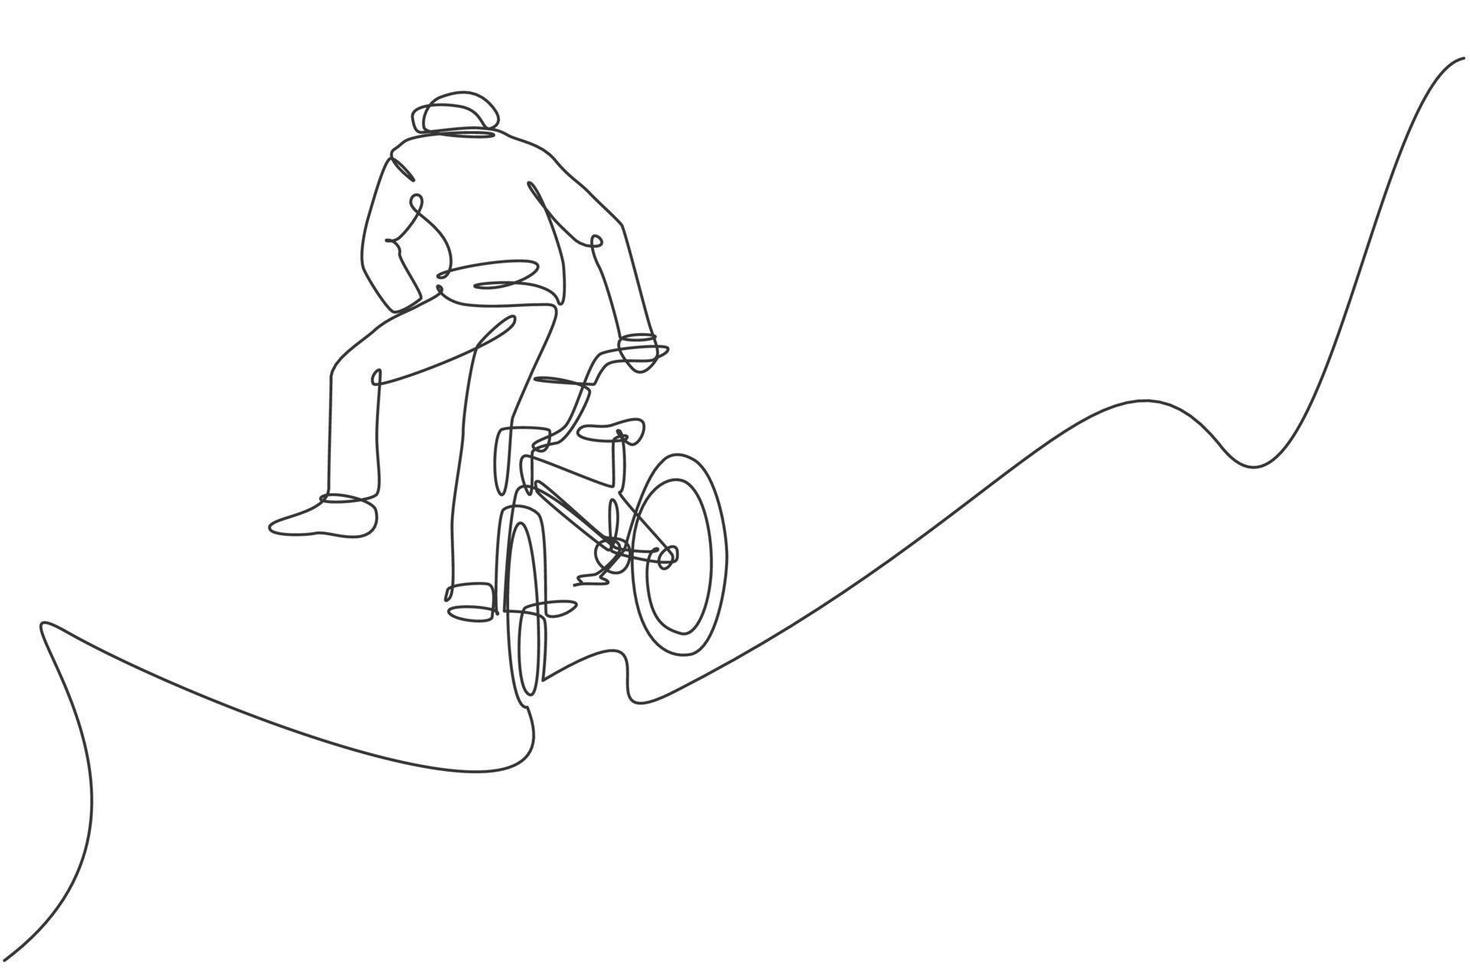 um desenho de linha contínua do jovem ciclista bmx realizando o truque de salto no ar no skatepark. ilustração em vetor conceito esporte radical. design de desenho de linha única para cartaz de promoção de eventos